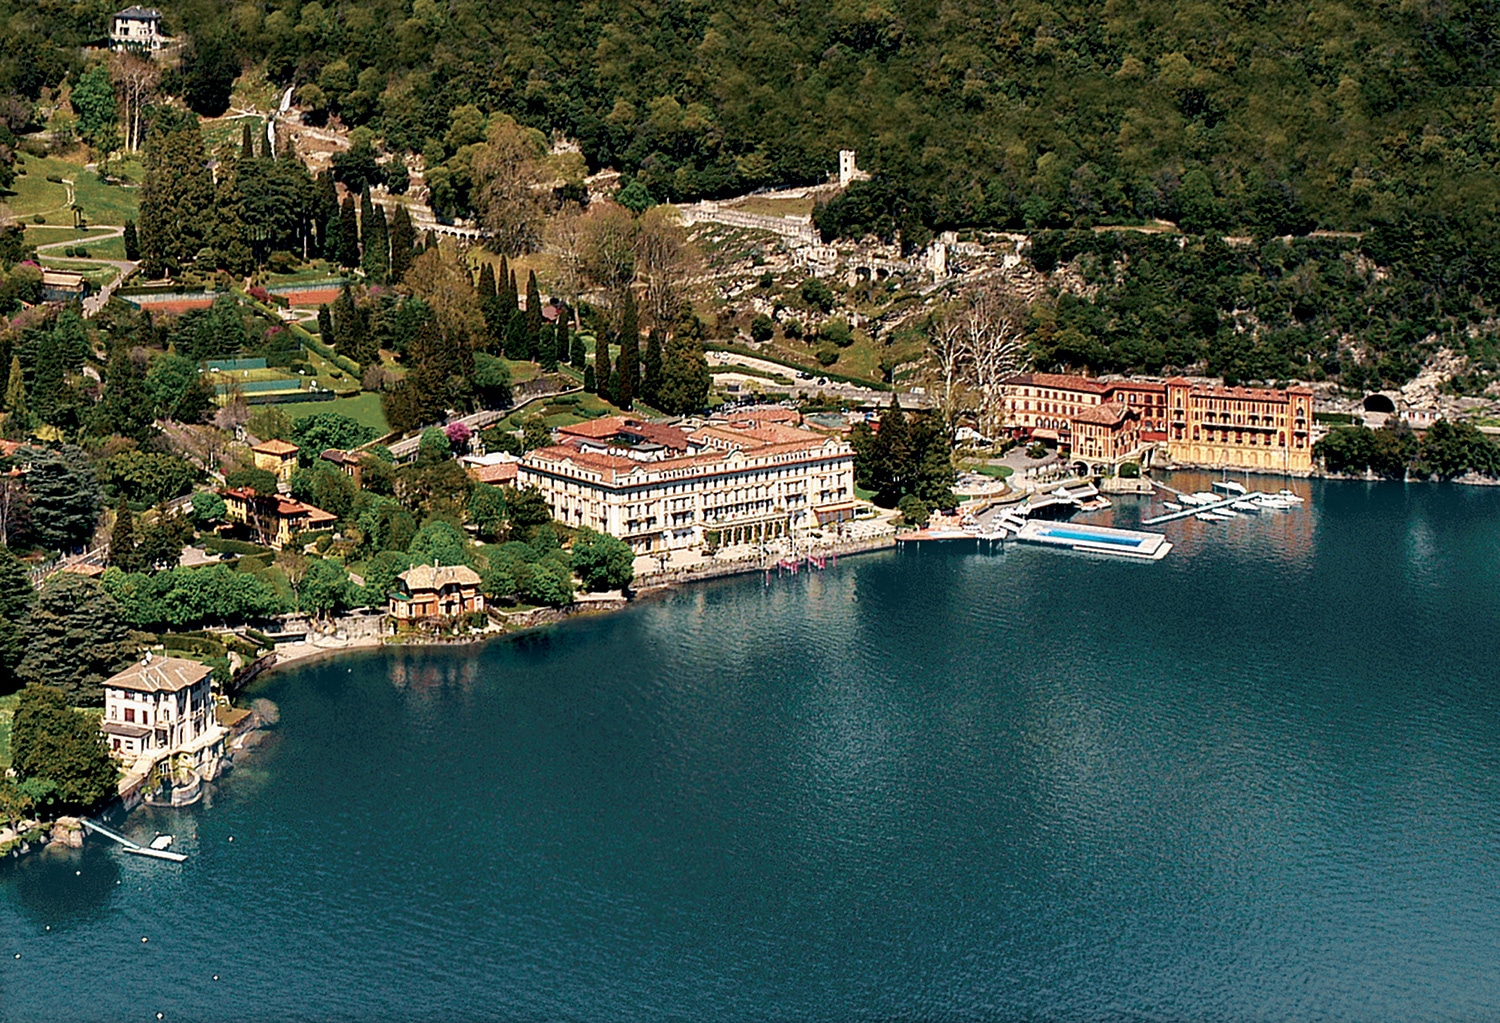 Lire la suite à propos de l’article Séjour idyllique à la Villa d’Este sur le Lac de Côme